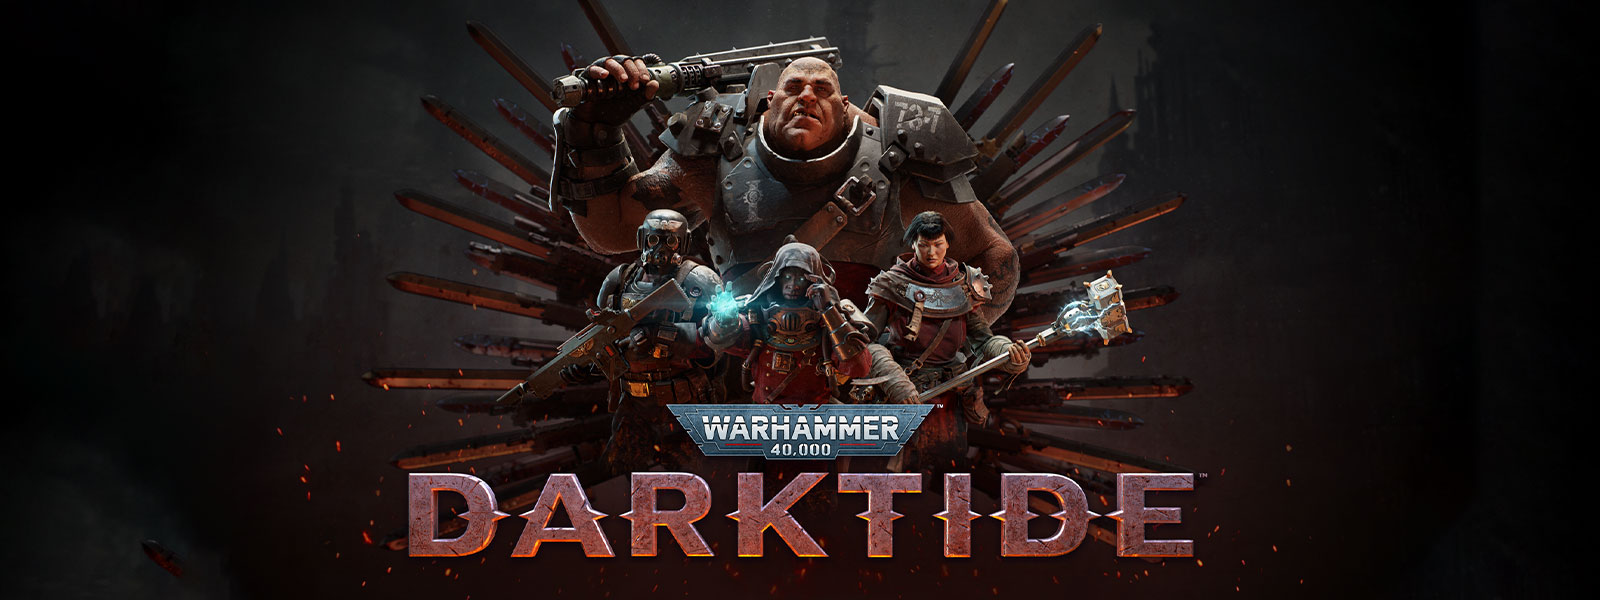 Warhammer 40,000: Darktide, Et hold af tungt udrustede karakterer poserer foran et klingemotiv.